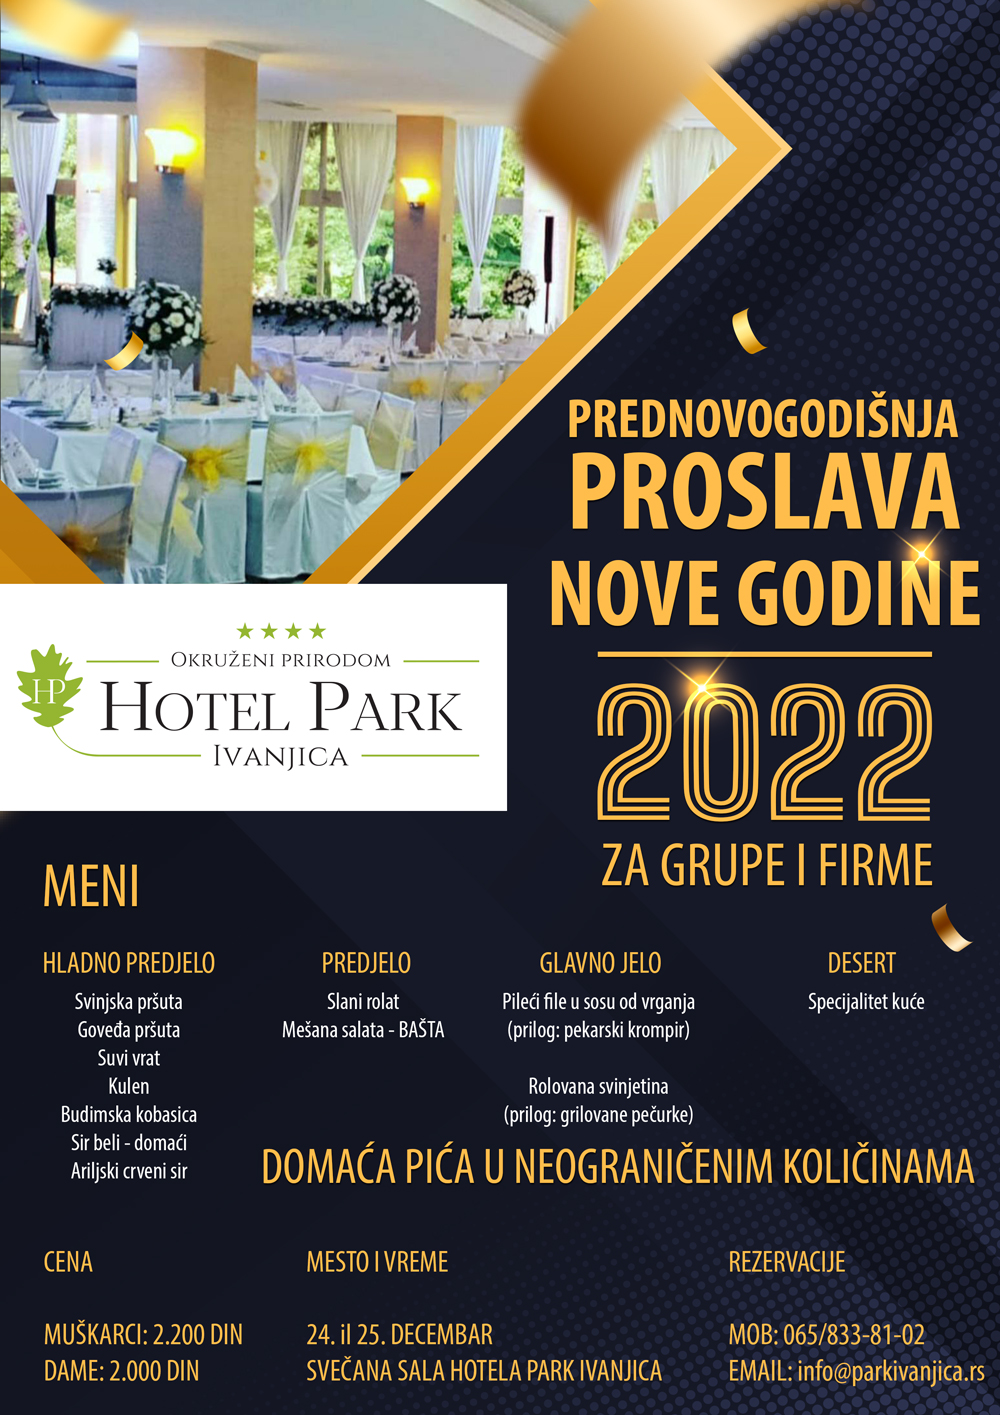 flajer2 Prednovogodišnje proslave u hotelu "Park" Ivanjica (VIDEO)